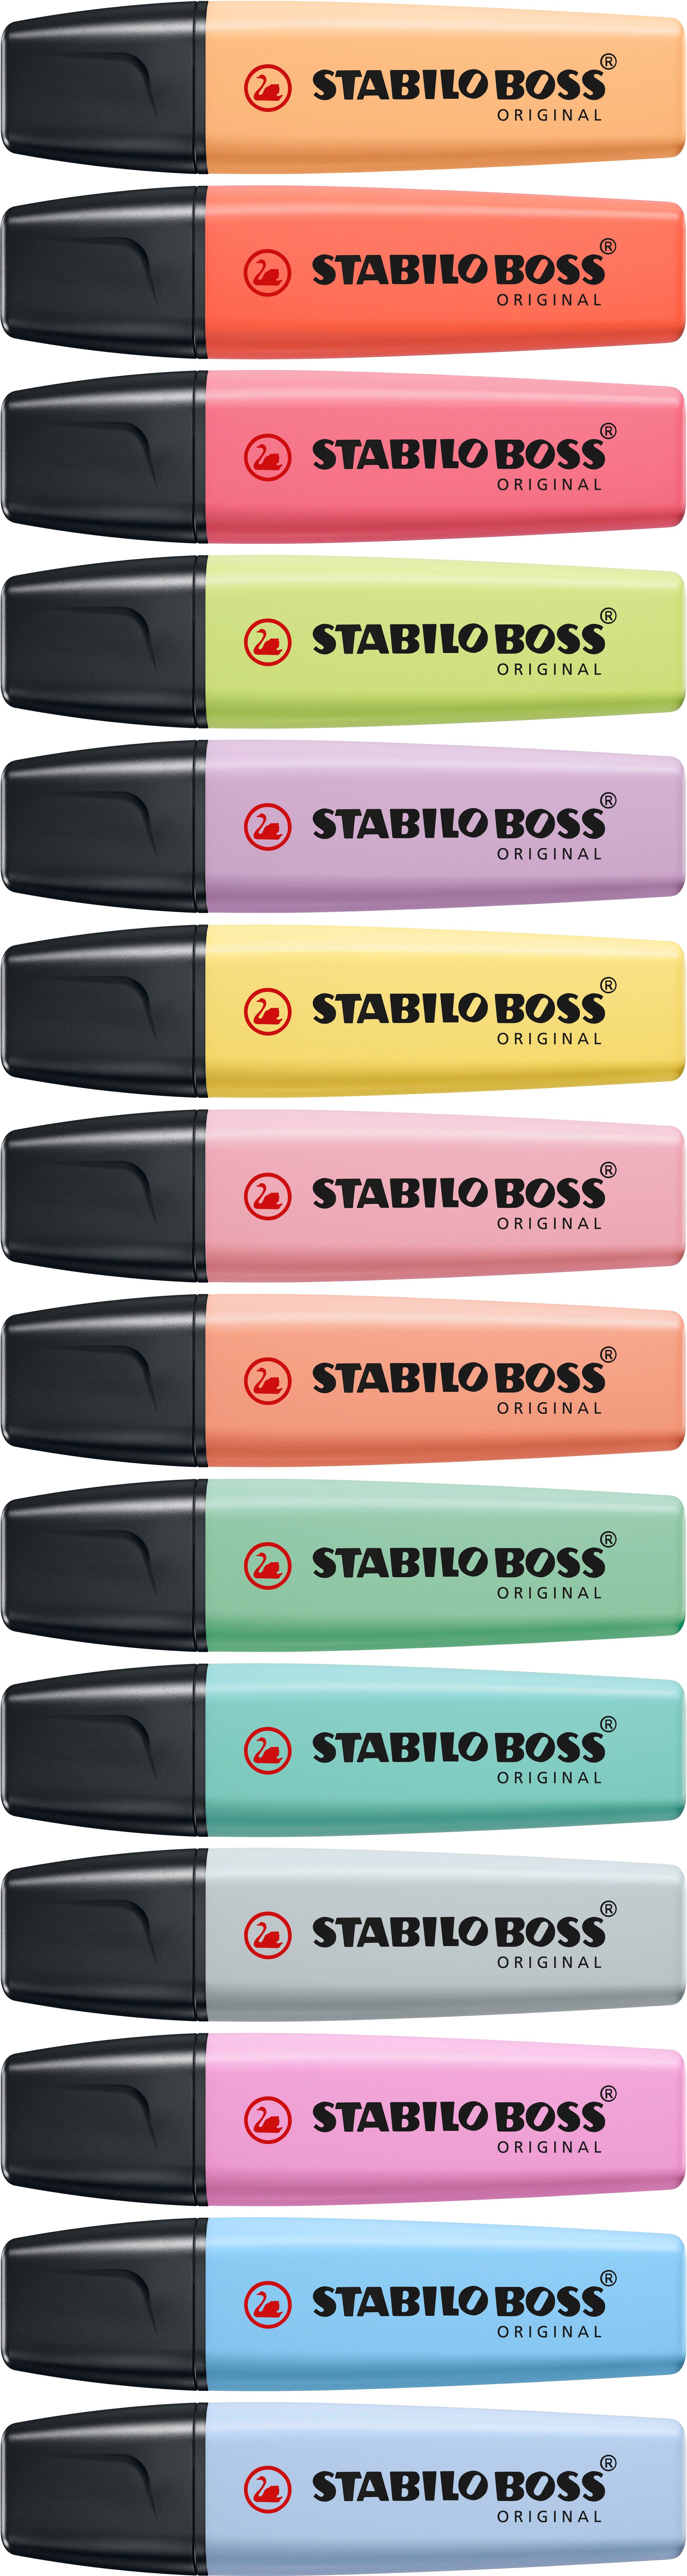 Highlighter STABILO BOSS ORIGINAL Pastel